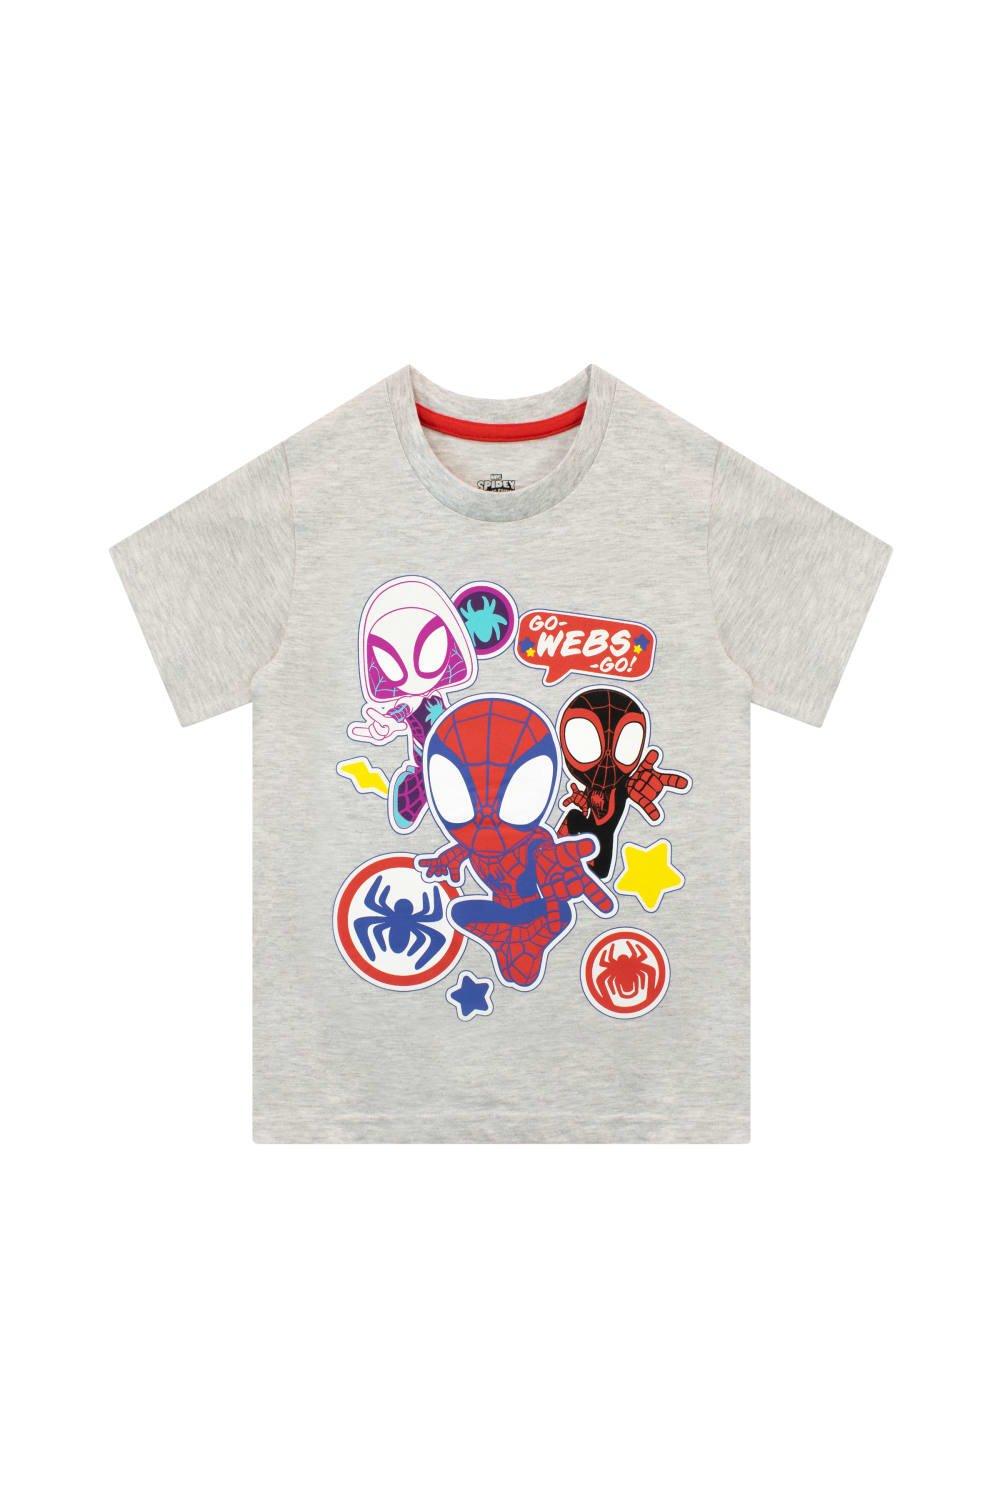 Футболка Spiderman Go Webs Go Marvel, серый фигурка funko pop майлз моралес в костюме фиолетовое царство из игры человек паук майлз моралес